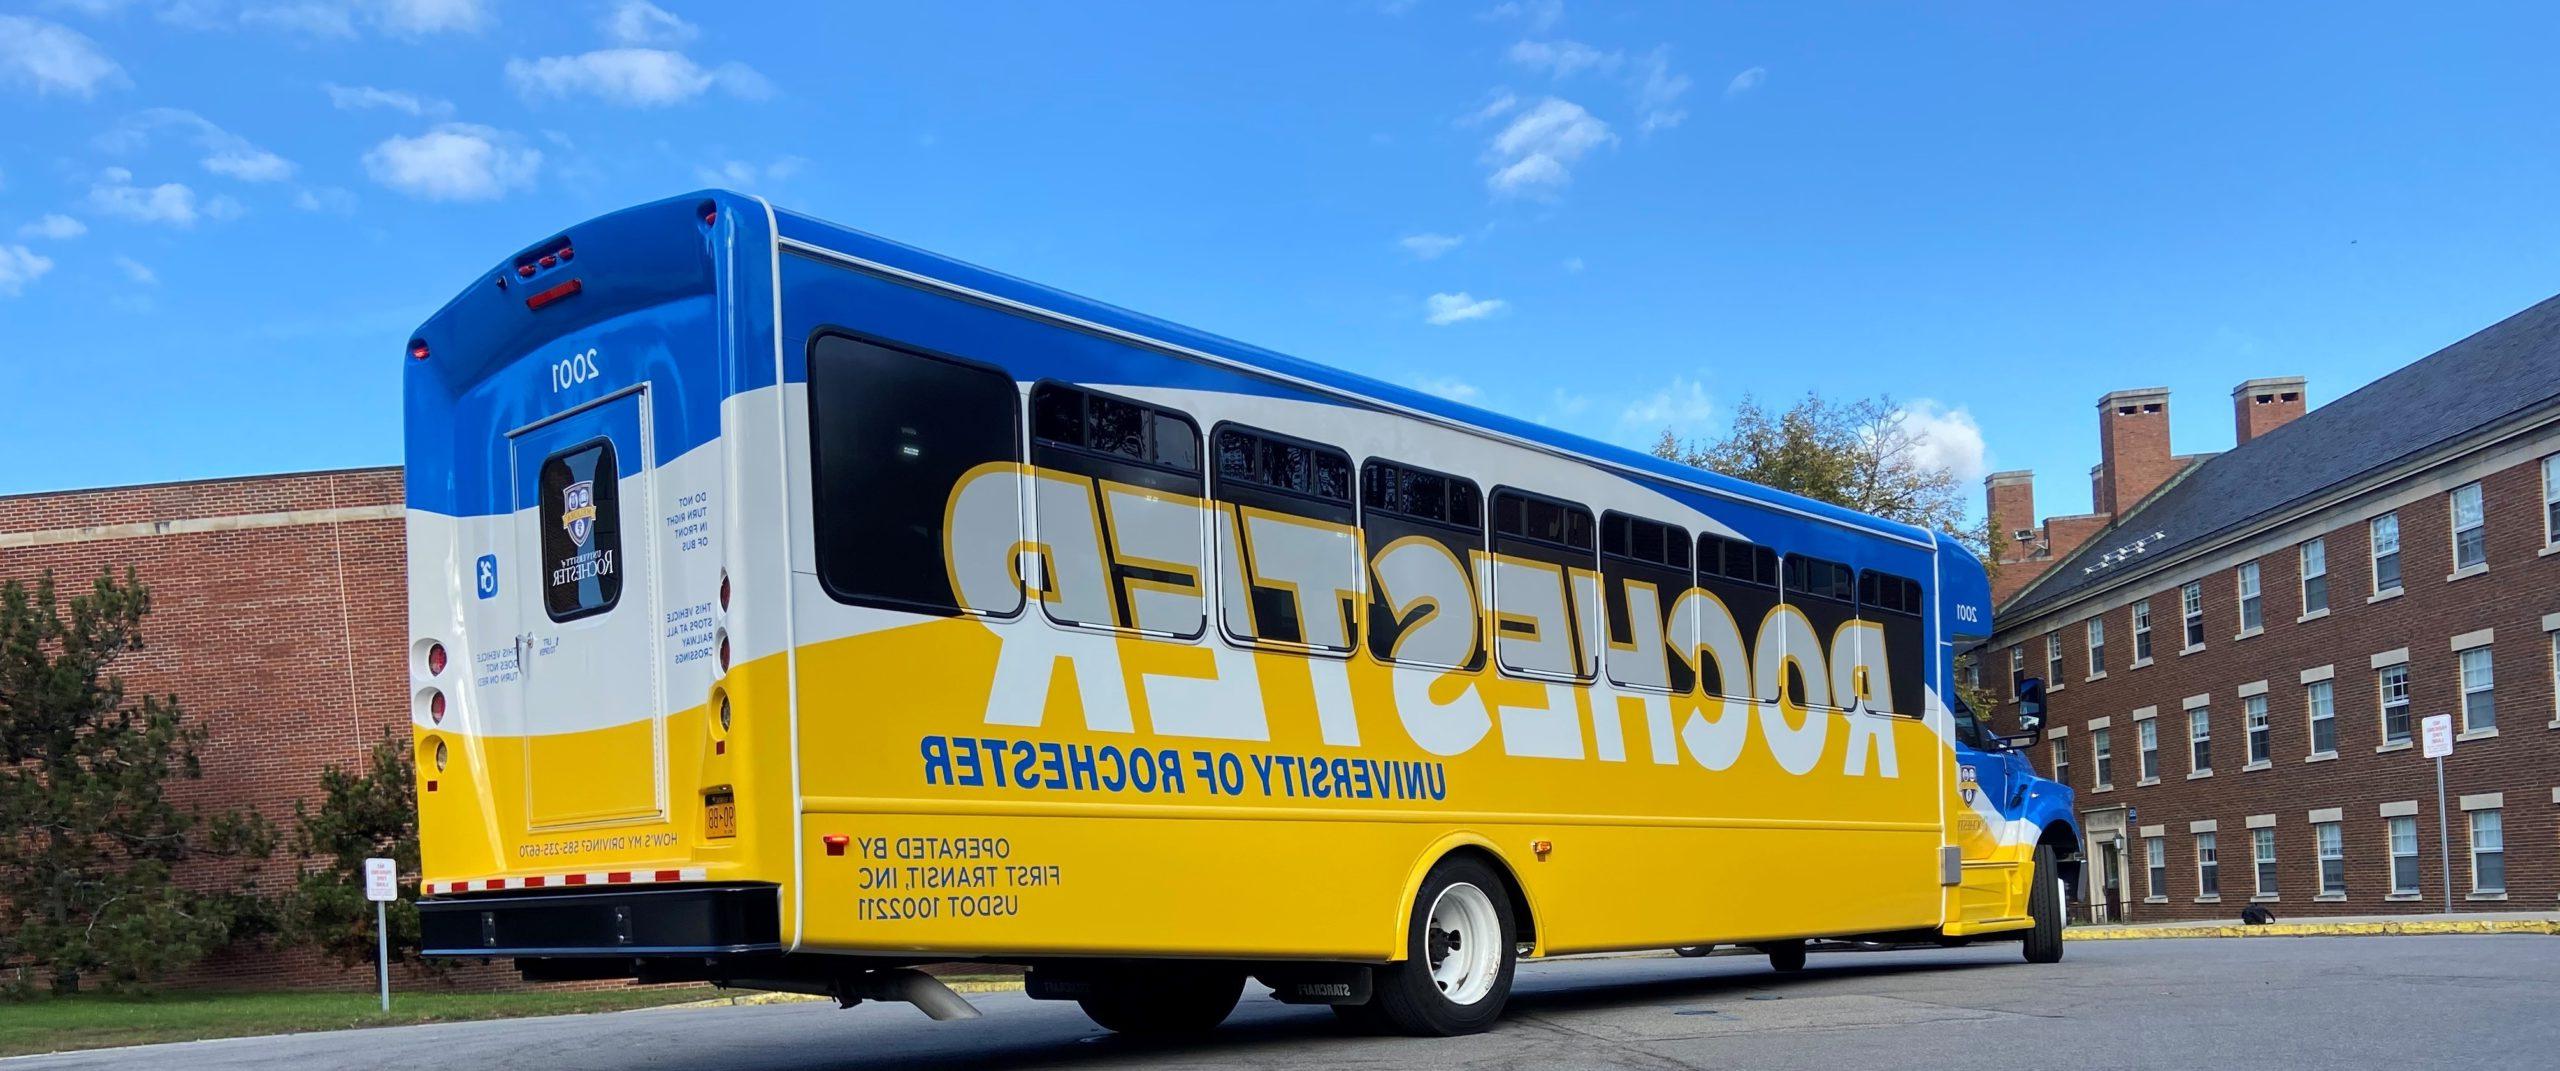 罗彻斯特大学穿梭巴士的新蓝黄包裹